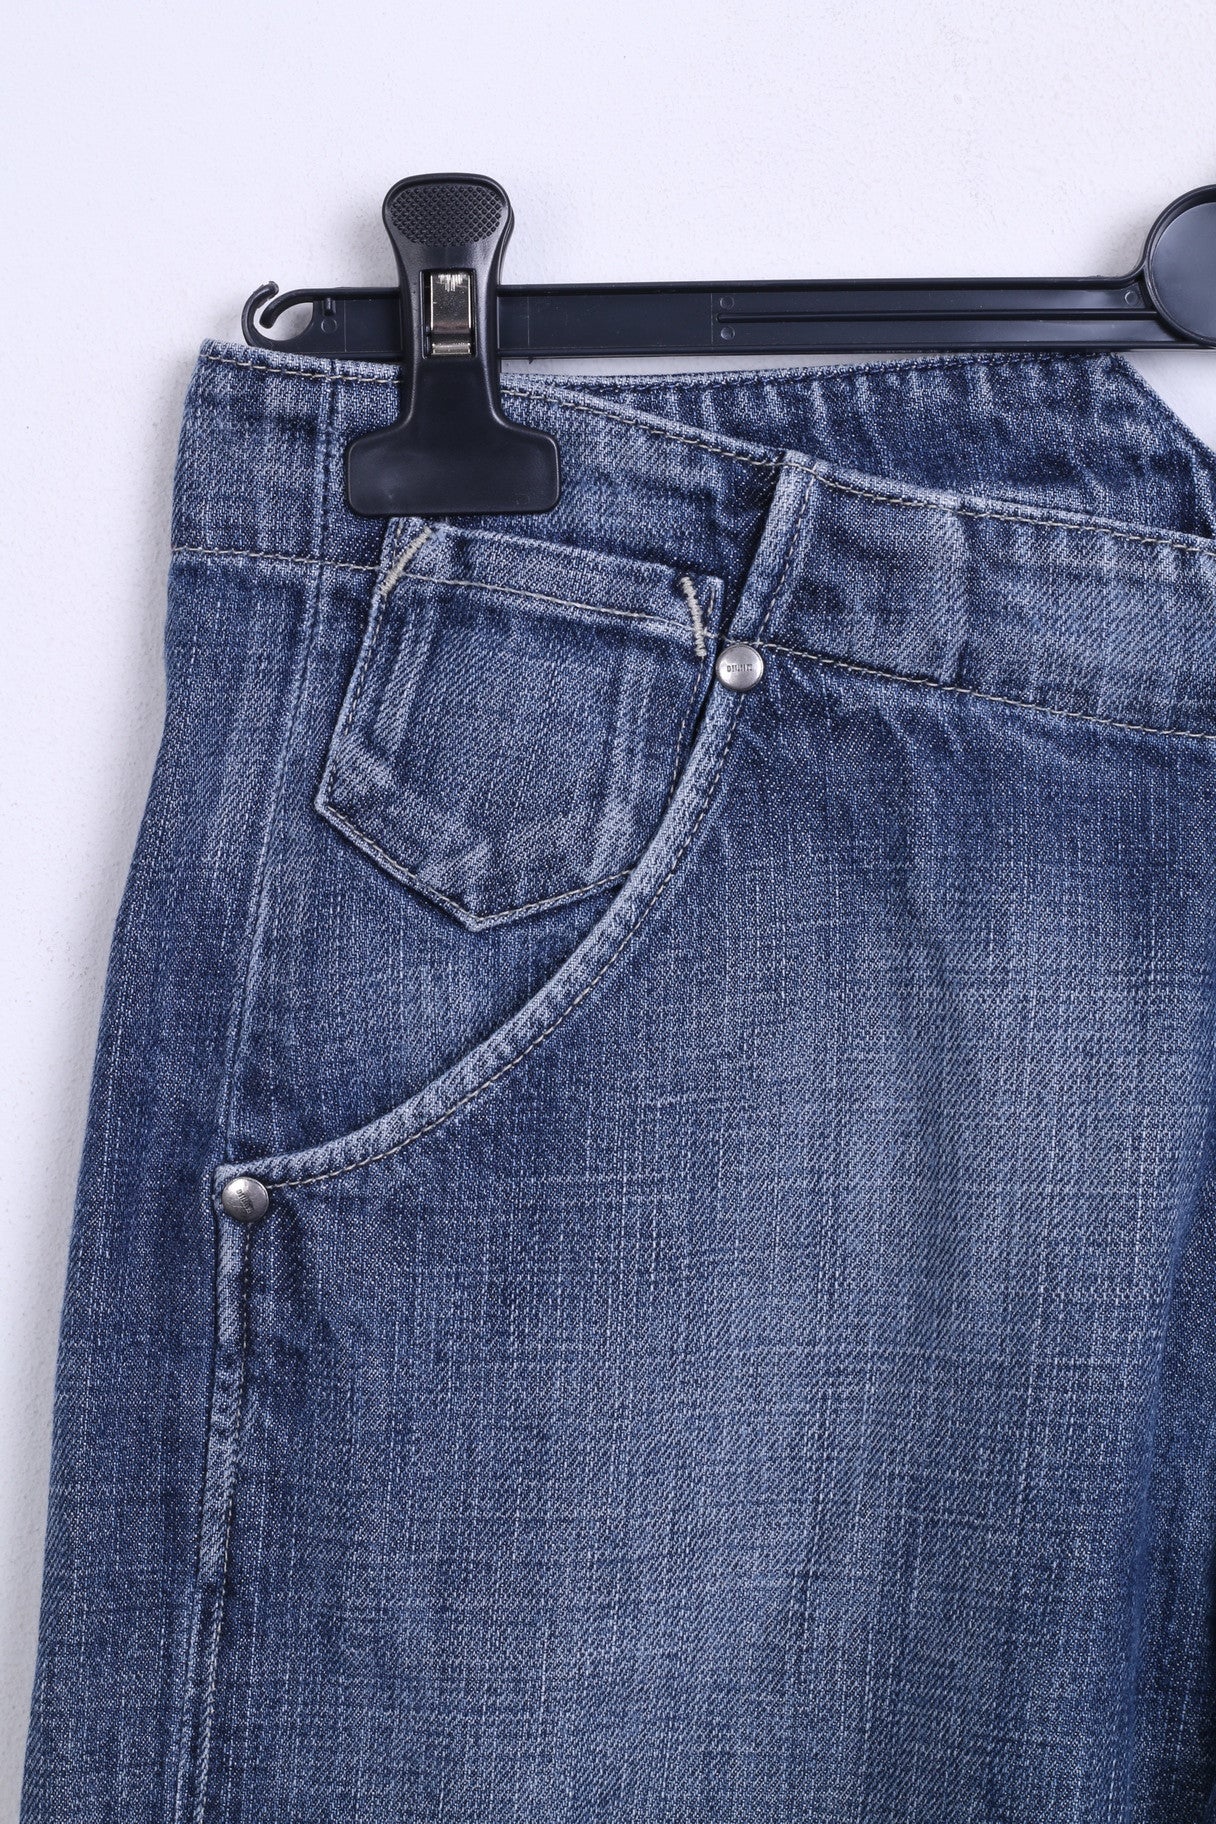 MUSTANG Womens Trousers W28 L32 Jeans Blue Cotton Denim - RetrospectClothes